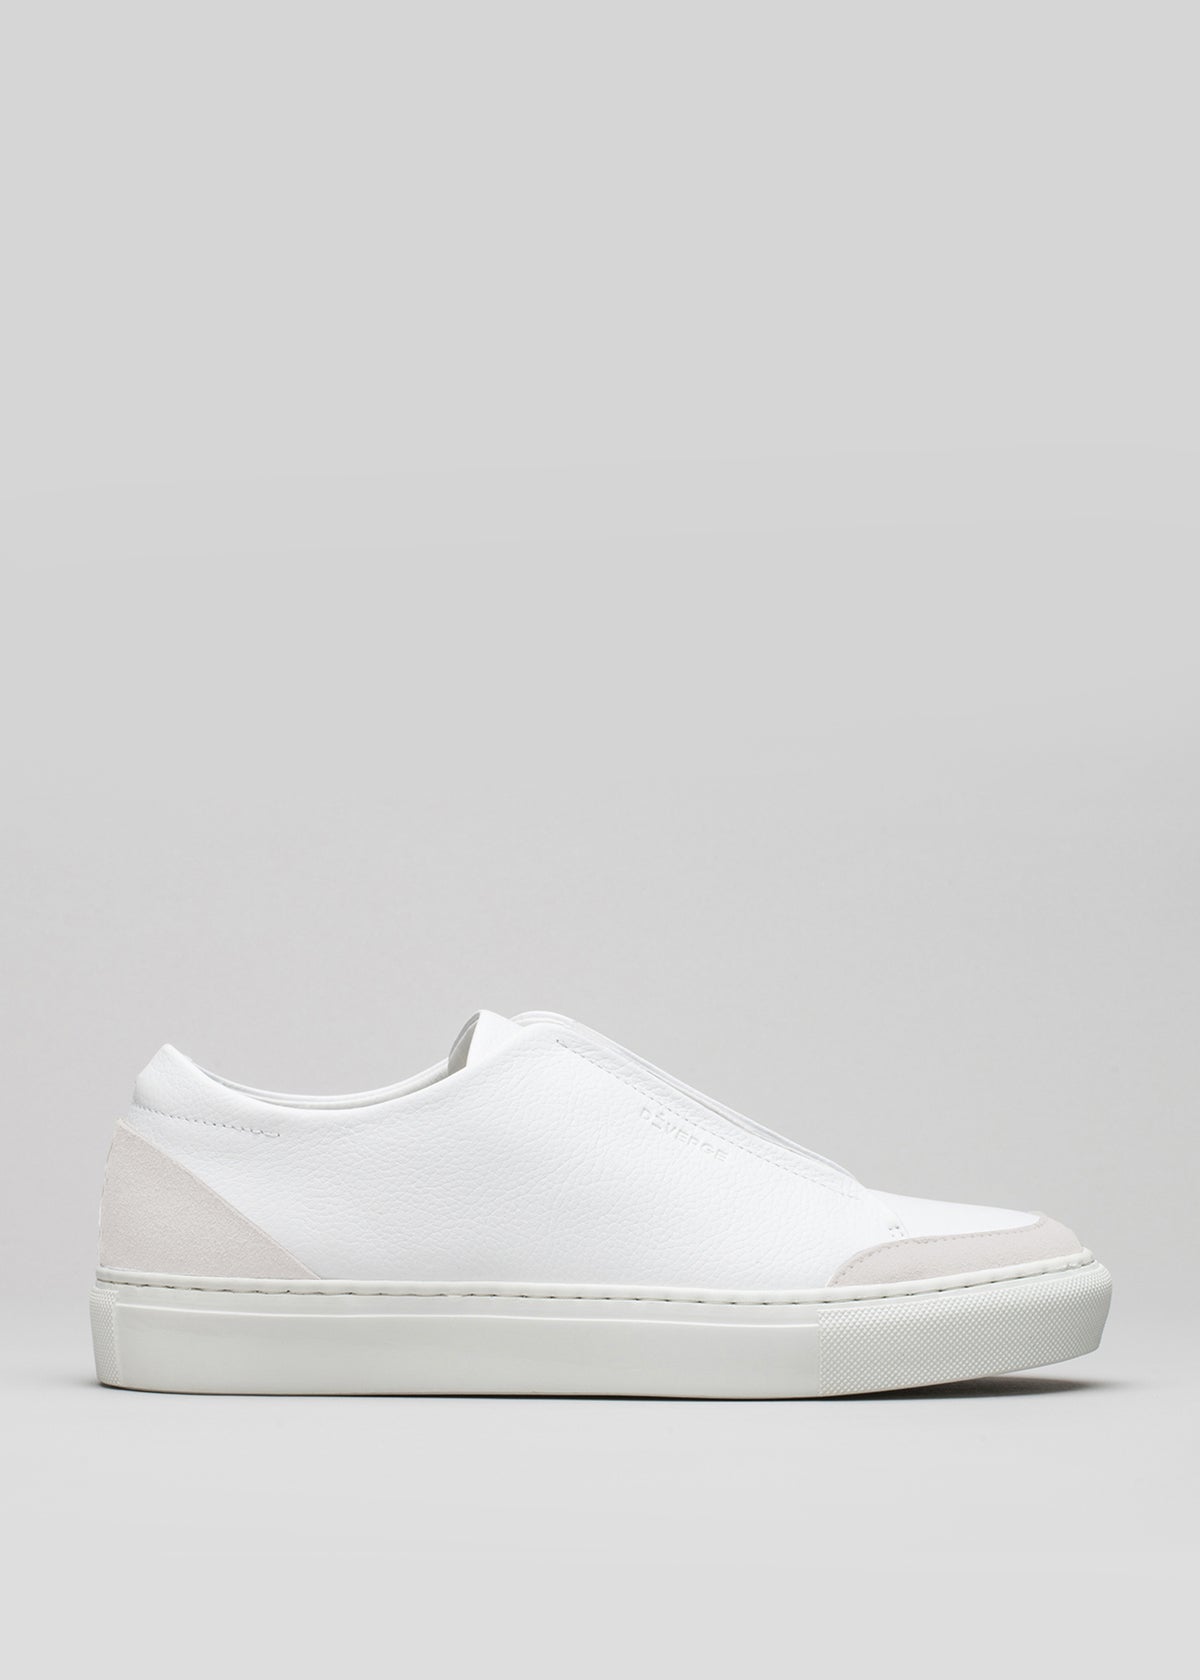 Commencez par une chaussure en toile blanche sneakers avec une semelle en caoutchouc, sur fond gris.